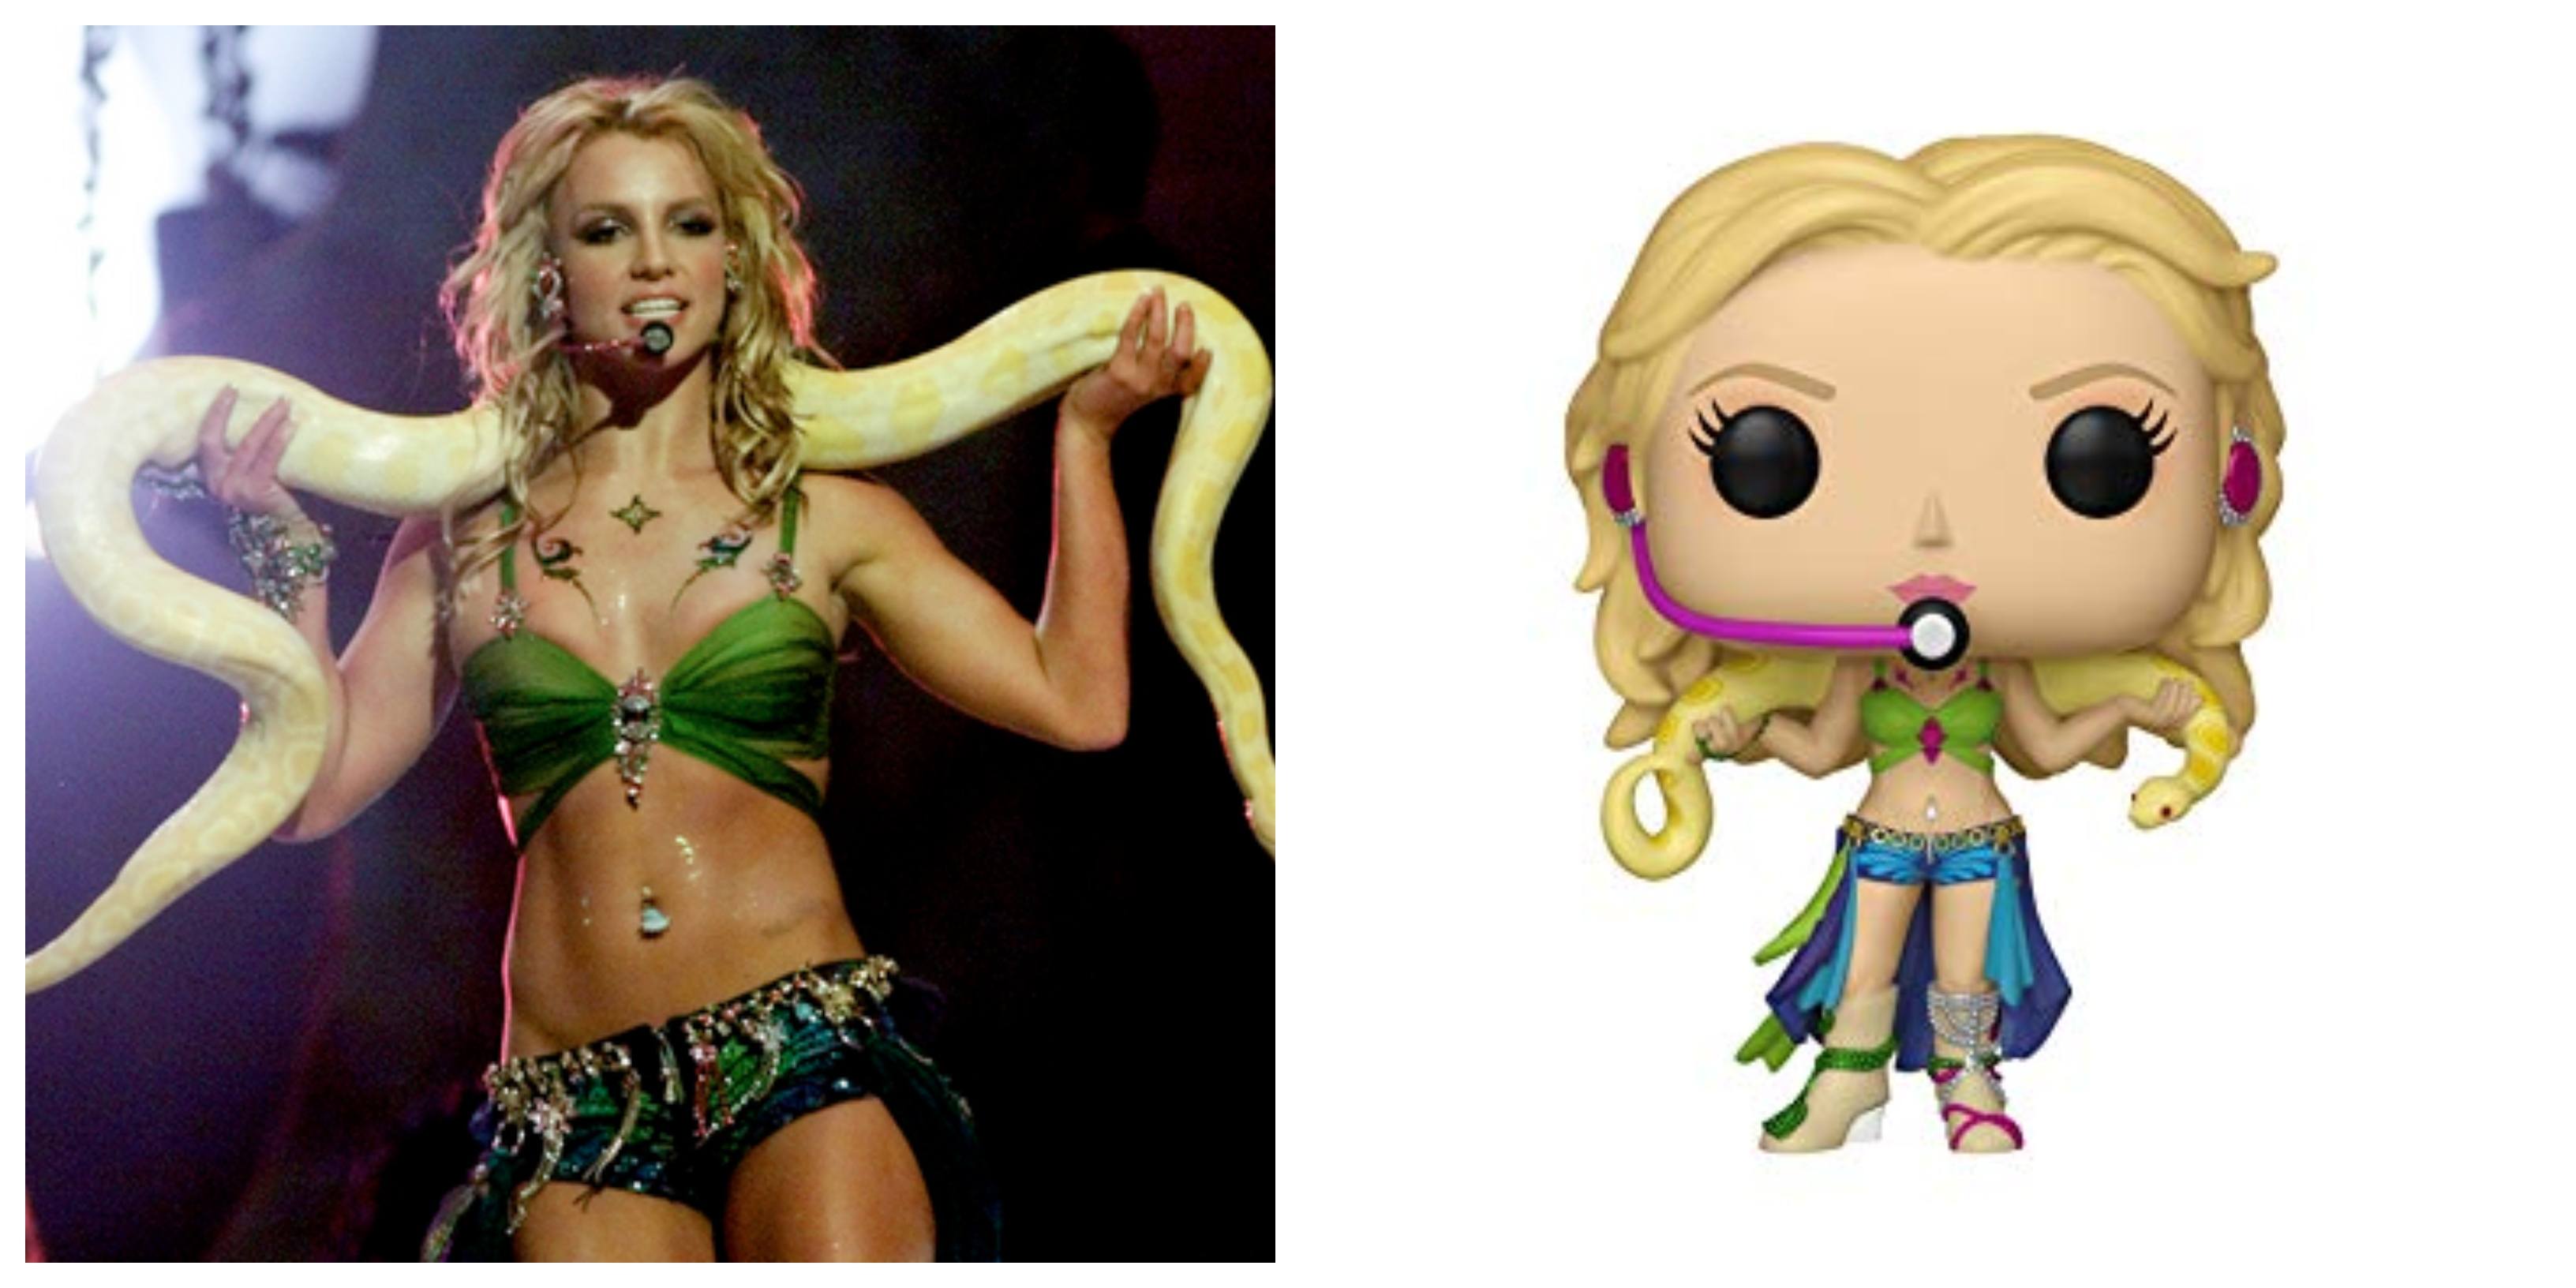 Britney Spears tendrá una pieza bastante especial de Funko Pop!